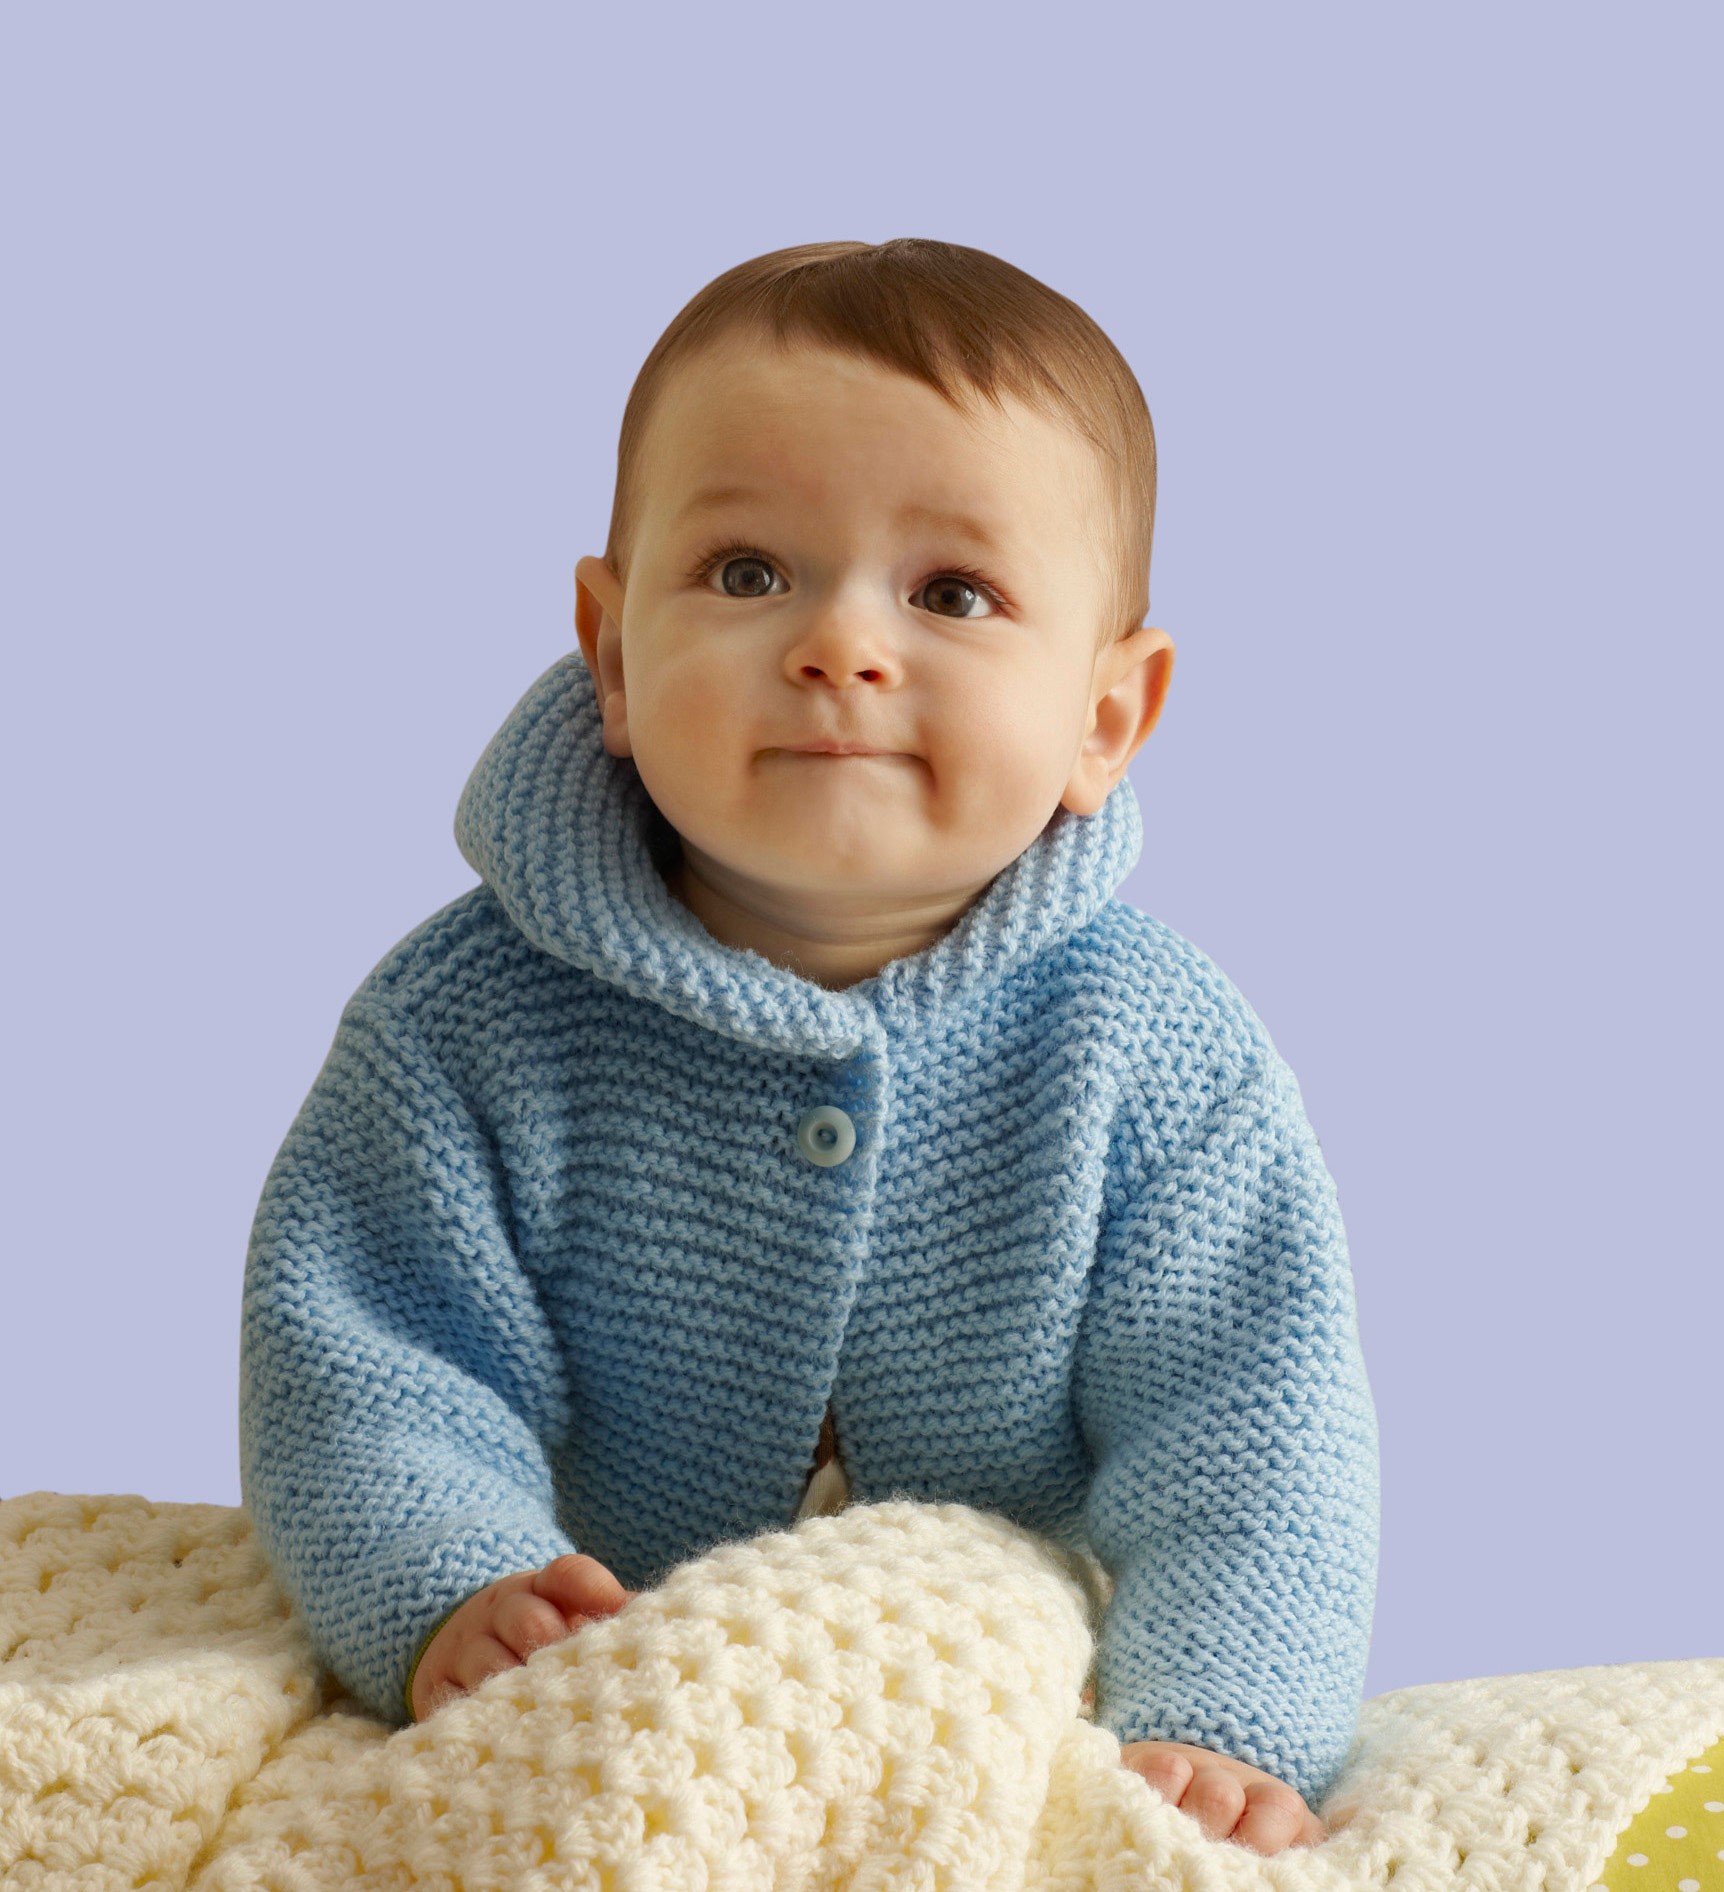 Storybook Baby Hoodie Pattern Knit